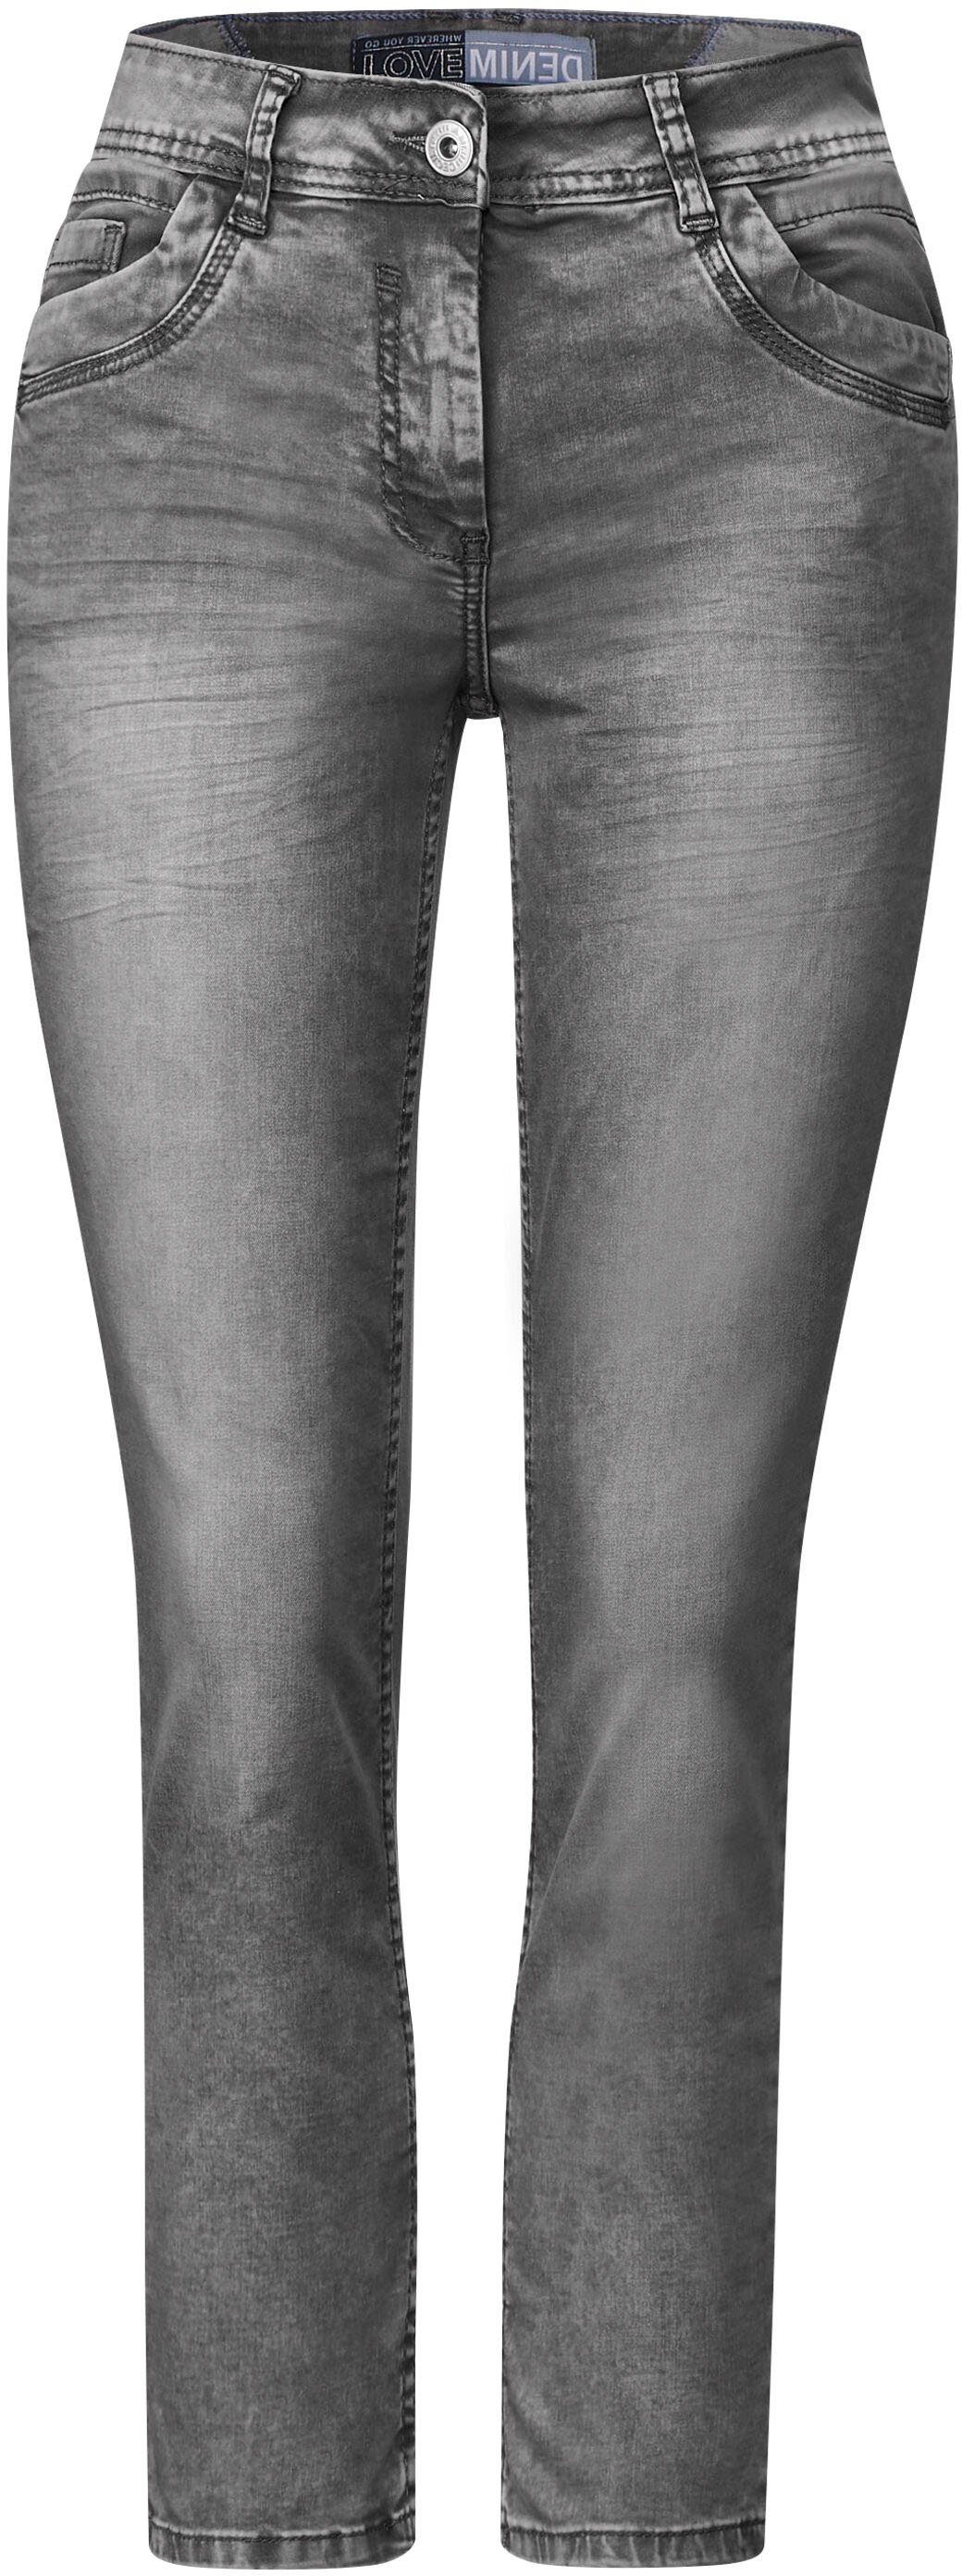 Cecil knöchelfreiem mit 5-Pocket-Jeans Style Scarlett Schnitt